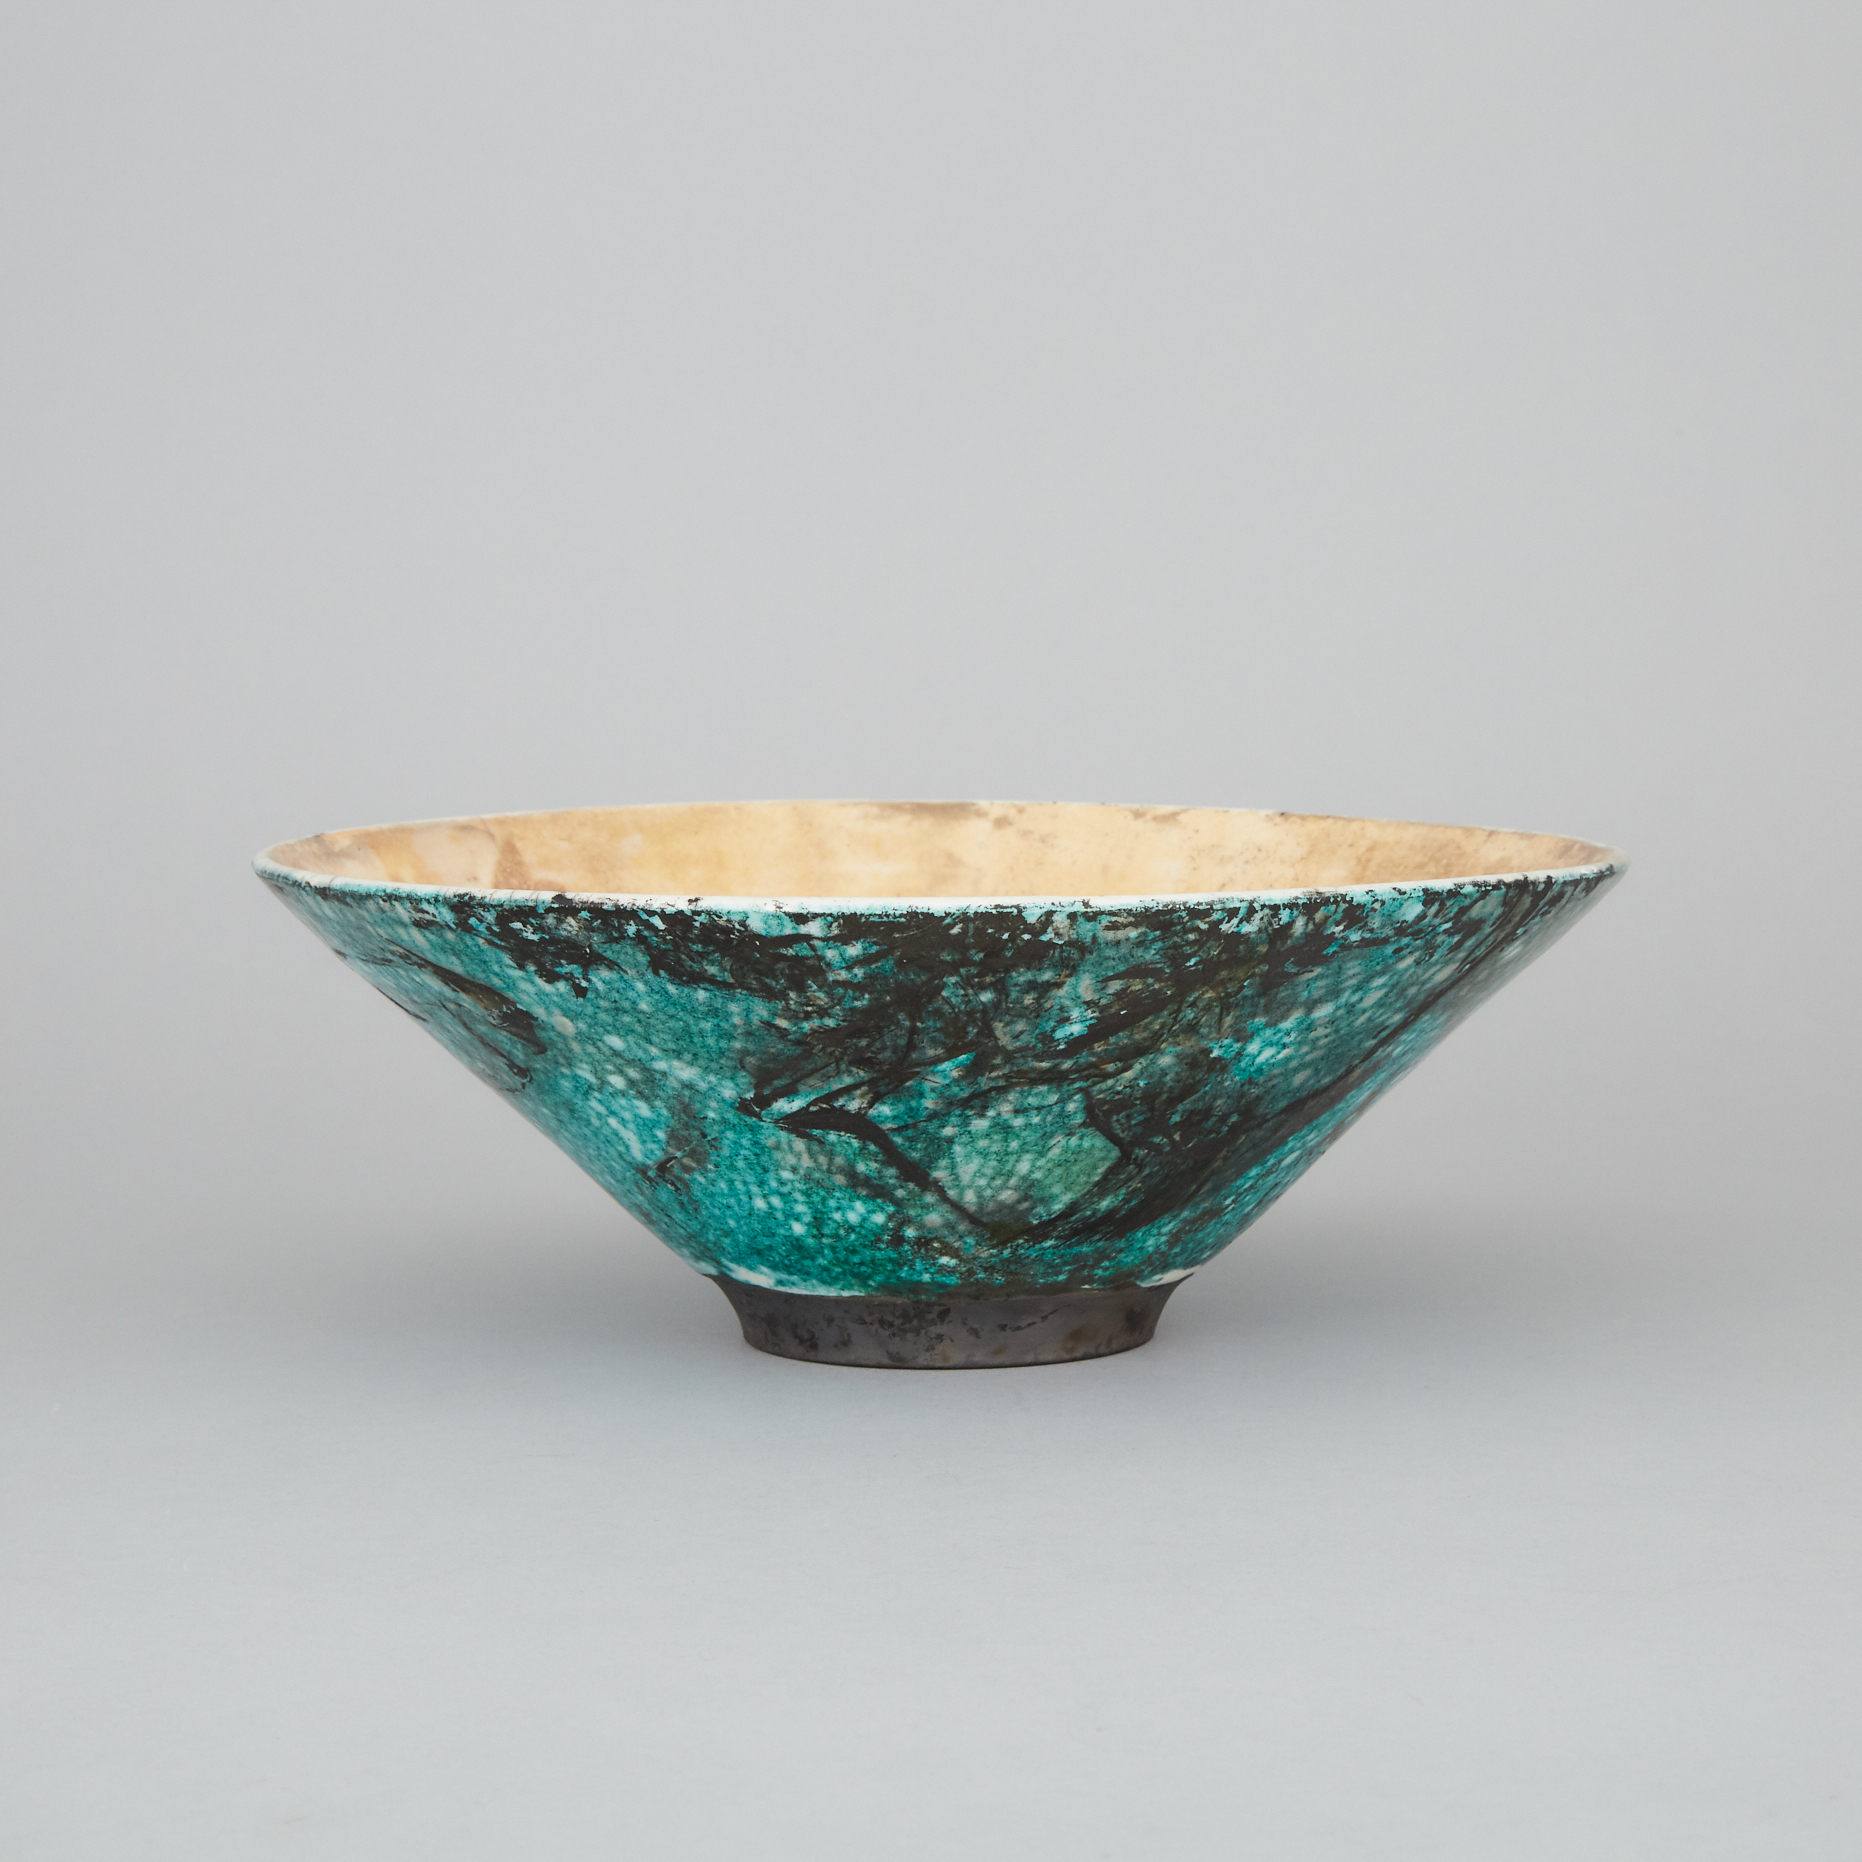 Susan Wintrop (Canadian, b.1953), Gold and Green Glazed Raku Bowl, c.1994